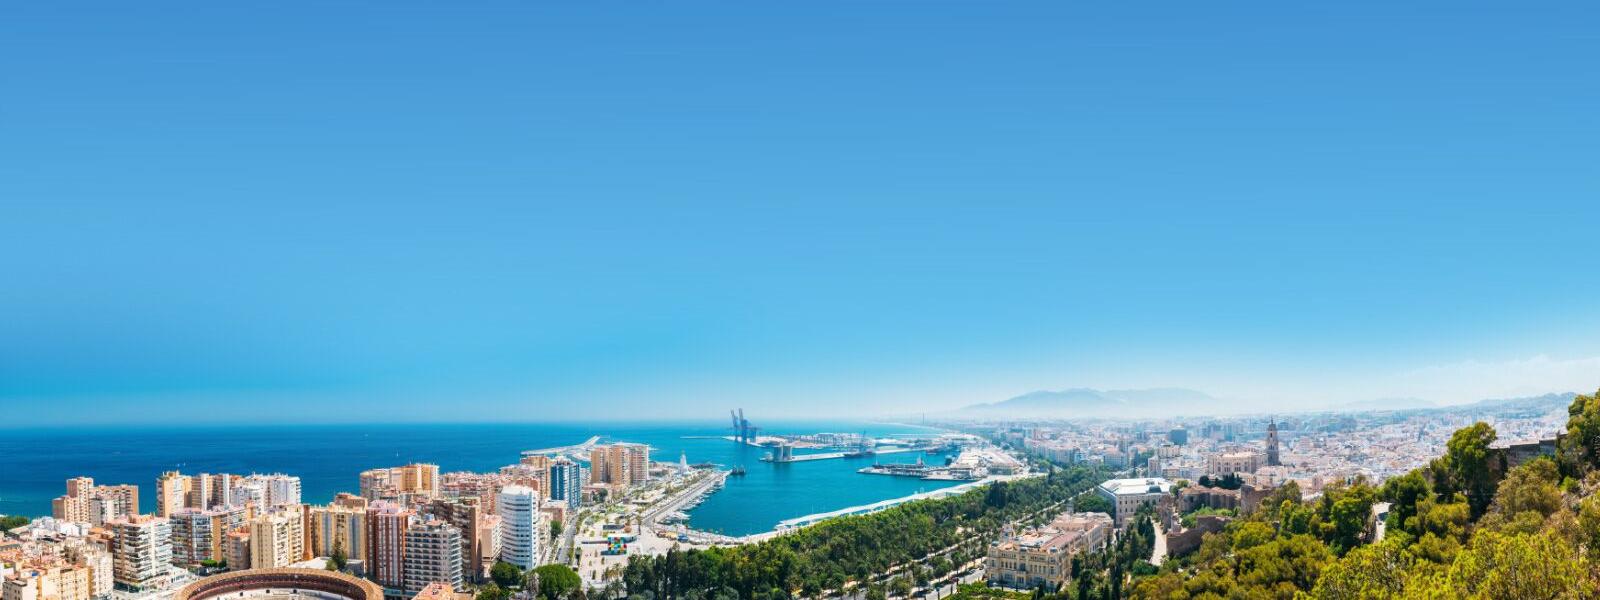 Luftaufnahme von Málaga, Hauptstadt der gleichnamigen Provinz in Andalusien